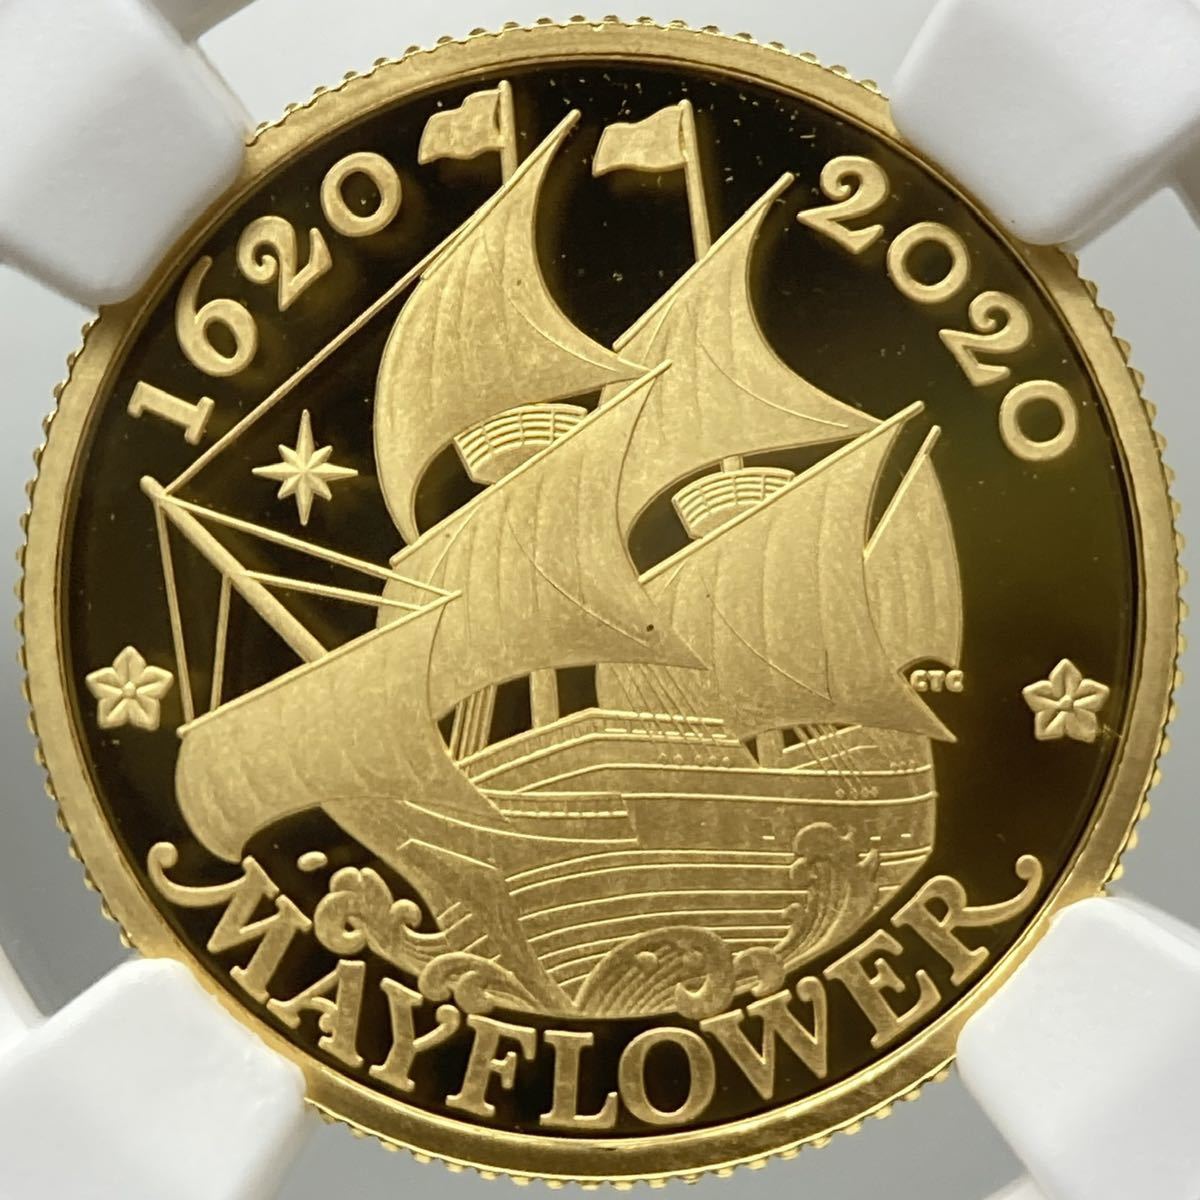 2020 イギリス 25ポンド金貨 NGC PF70UC メイフラワー号 400周年記念 英国 アンティーク モダン コイン